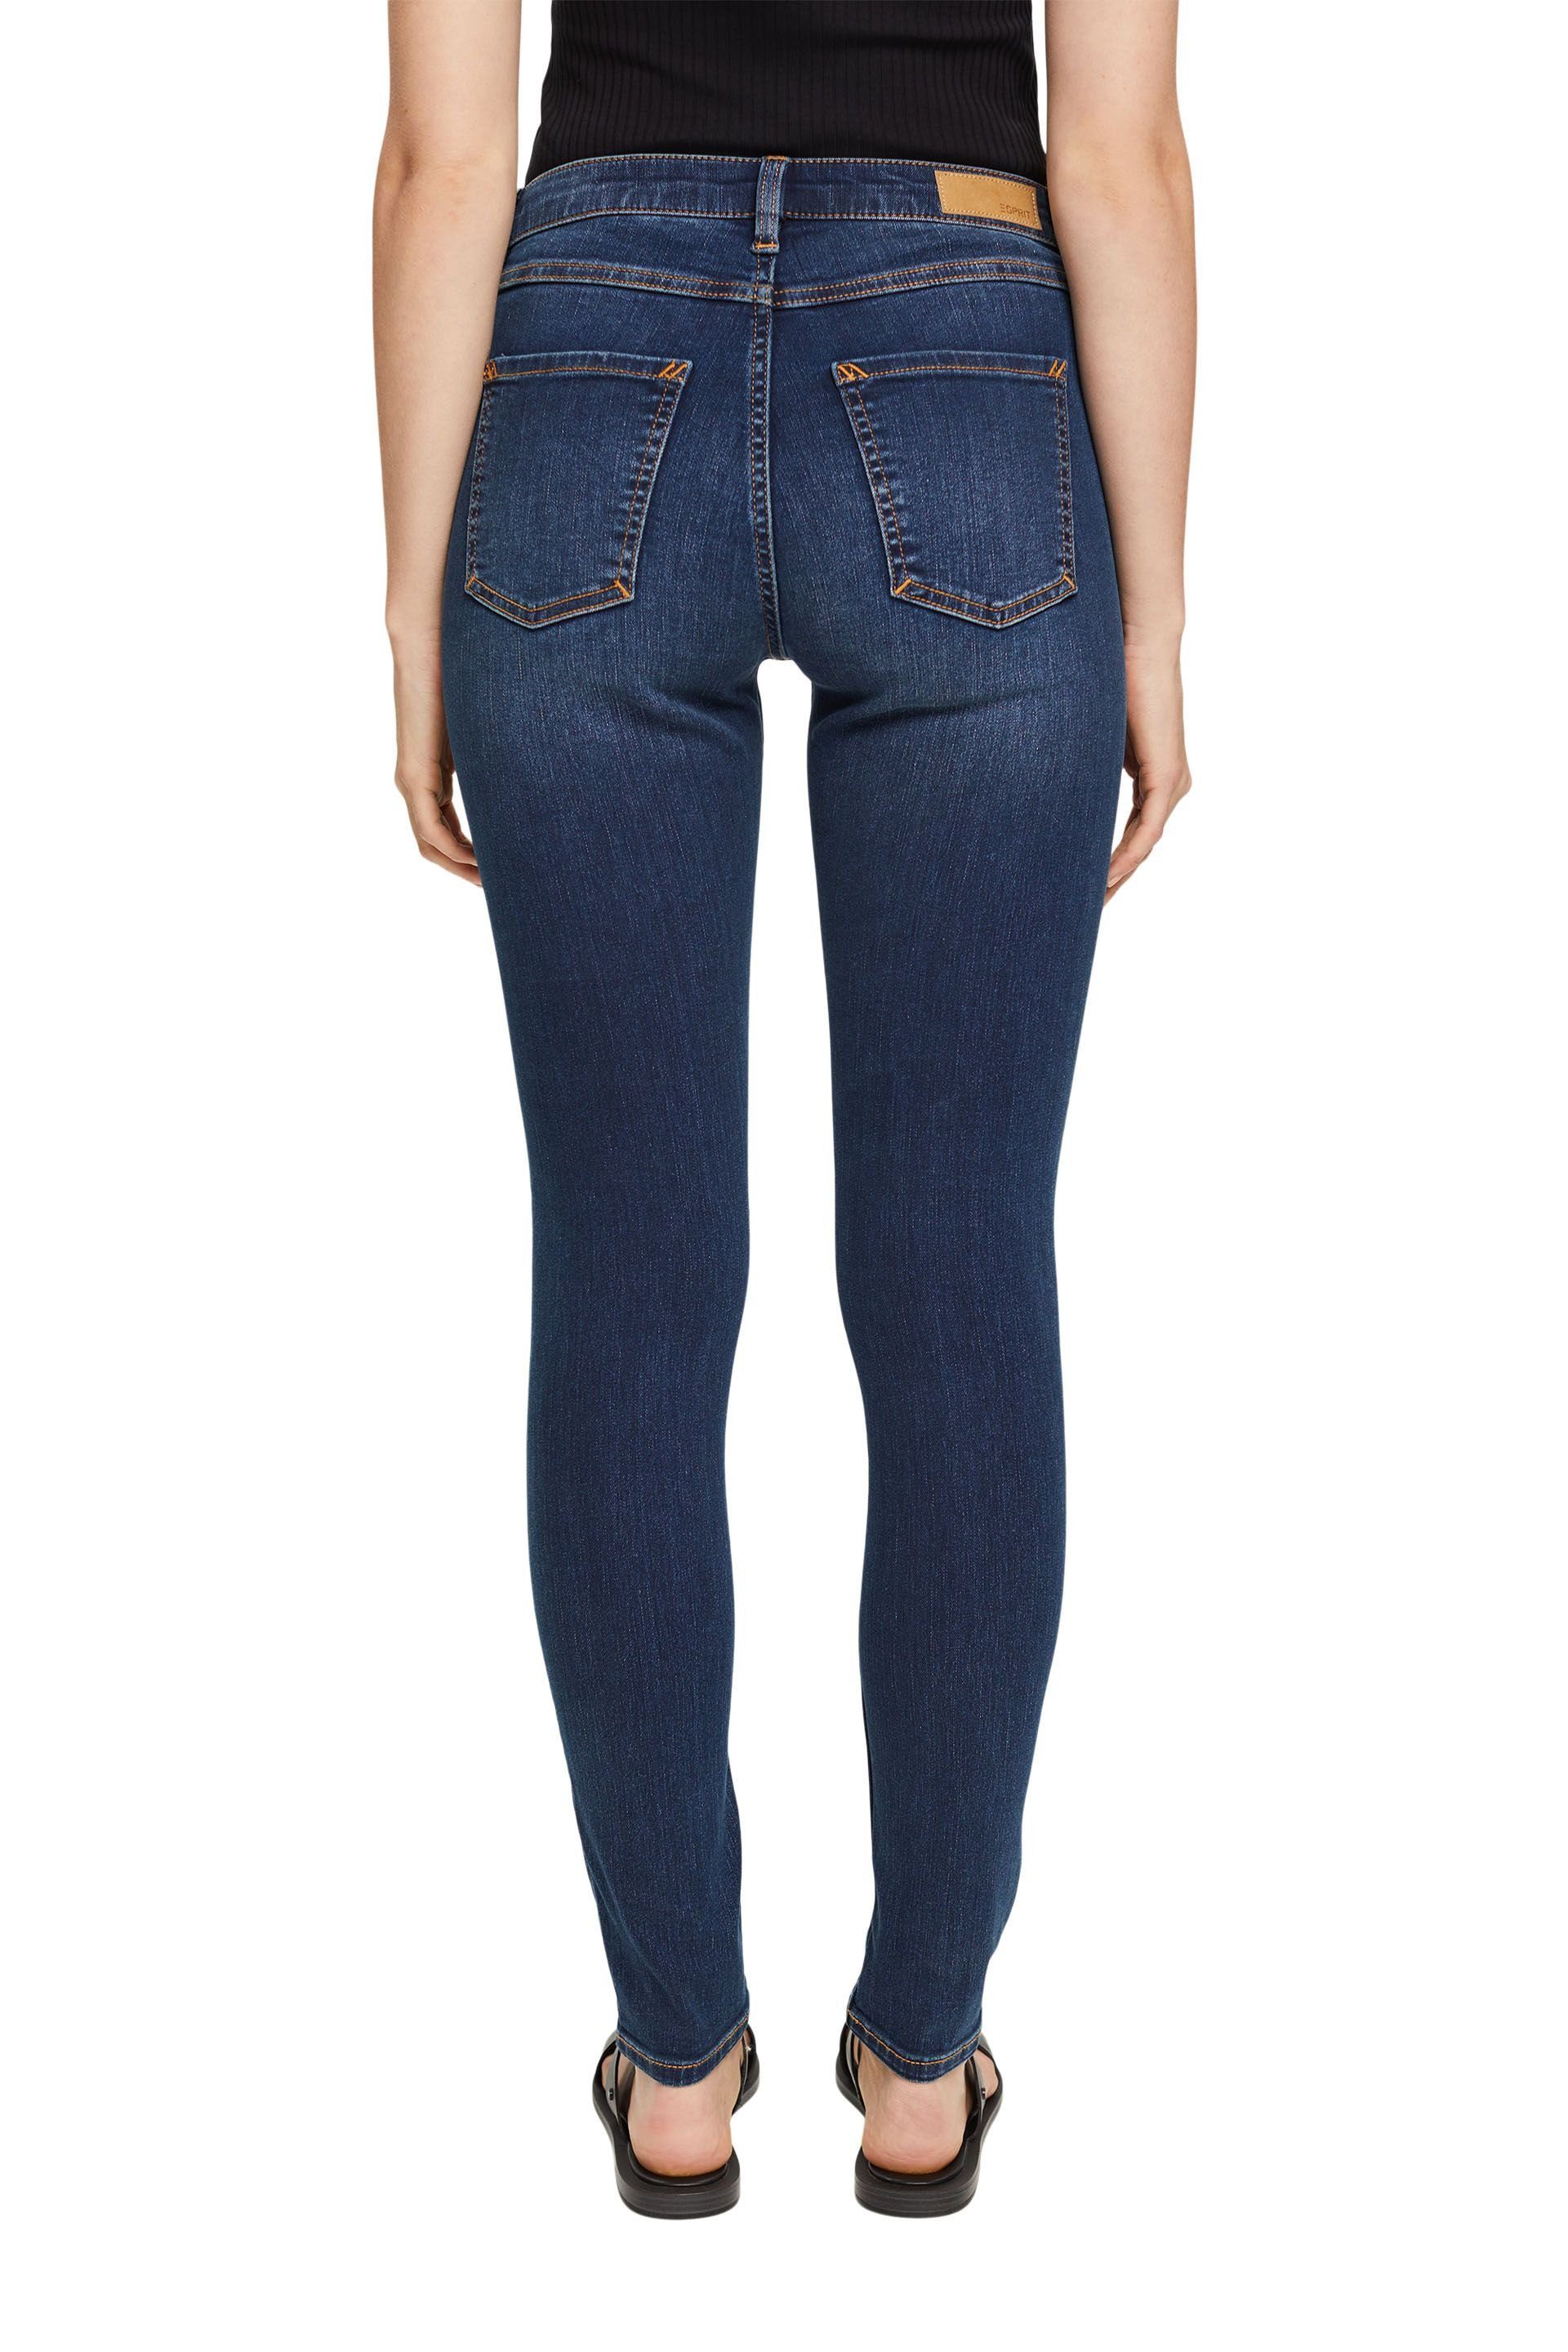 Esprit 5-Pocket-Jeans blue Skinny Fit Jeans washed dark